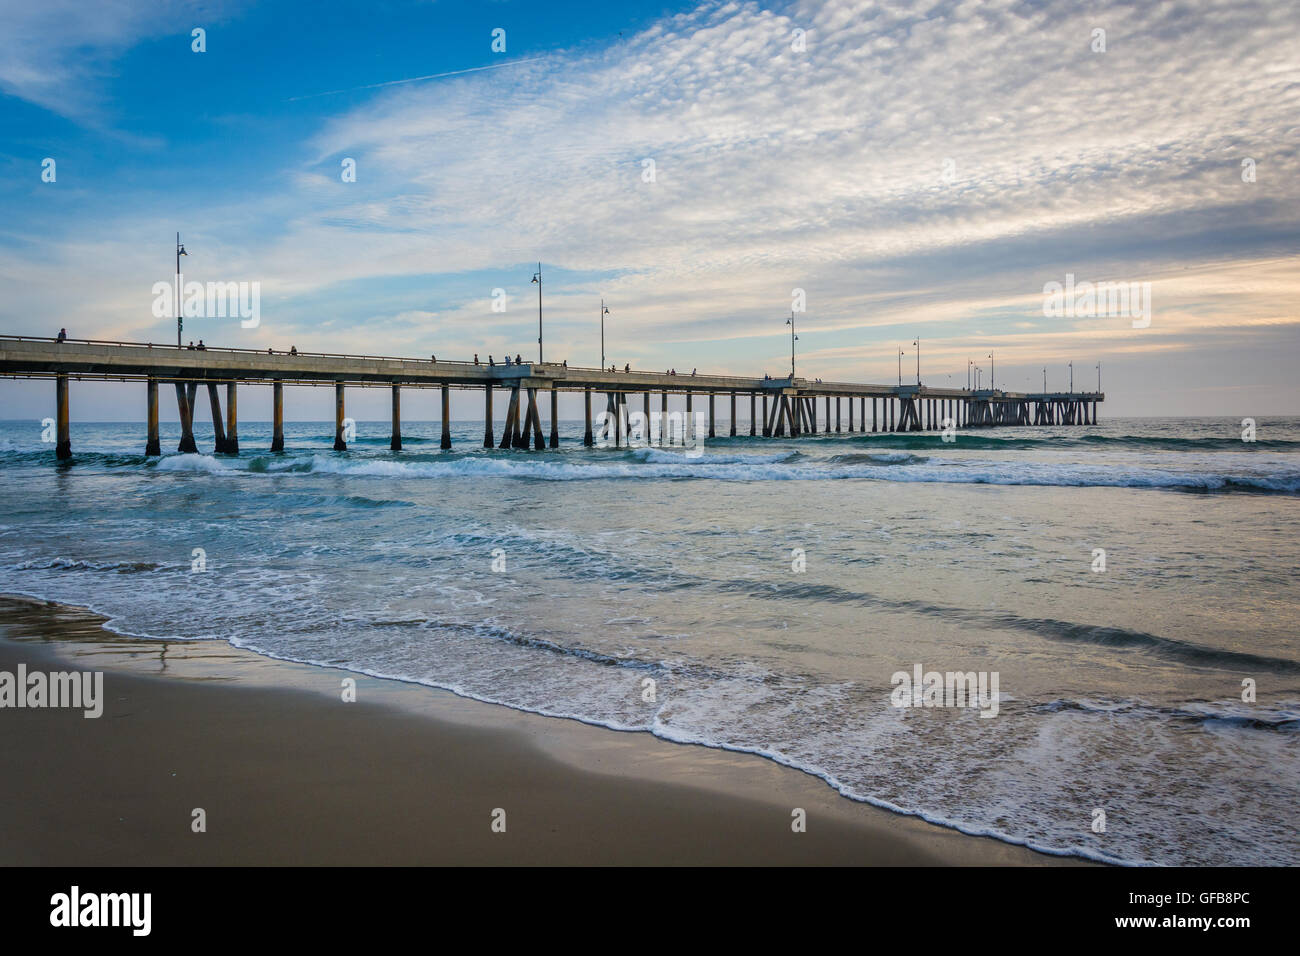 La jetée de Venice Beach, Los Angeles, Californie. Banque D'Images